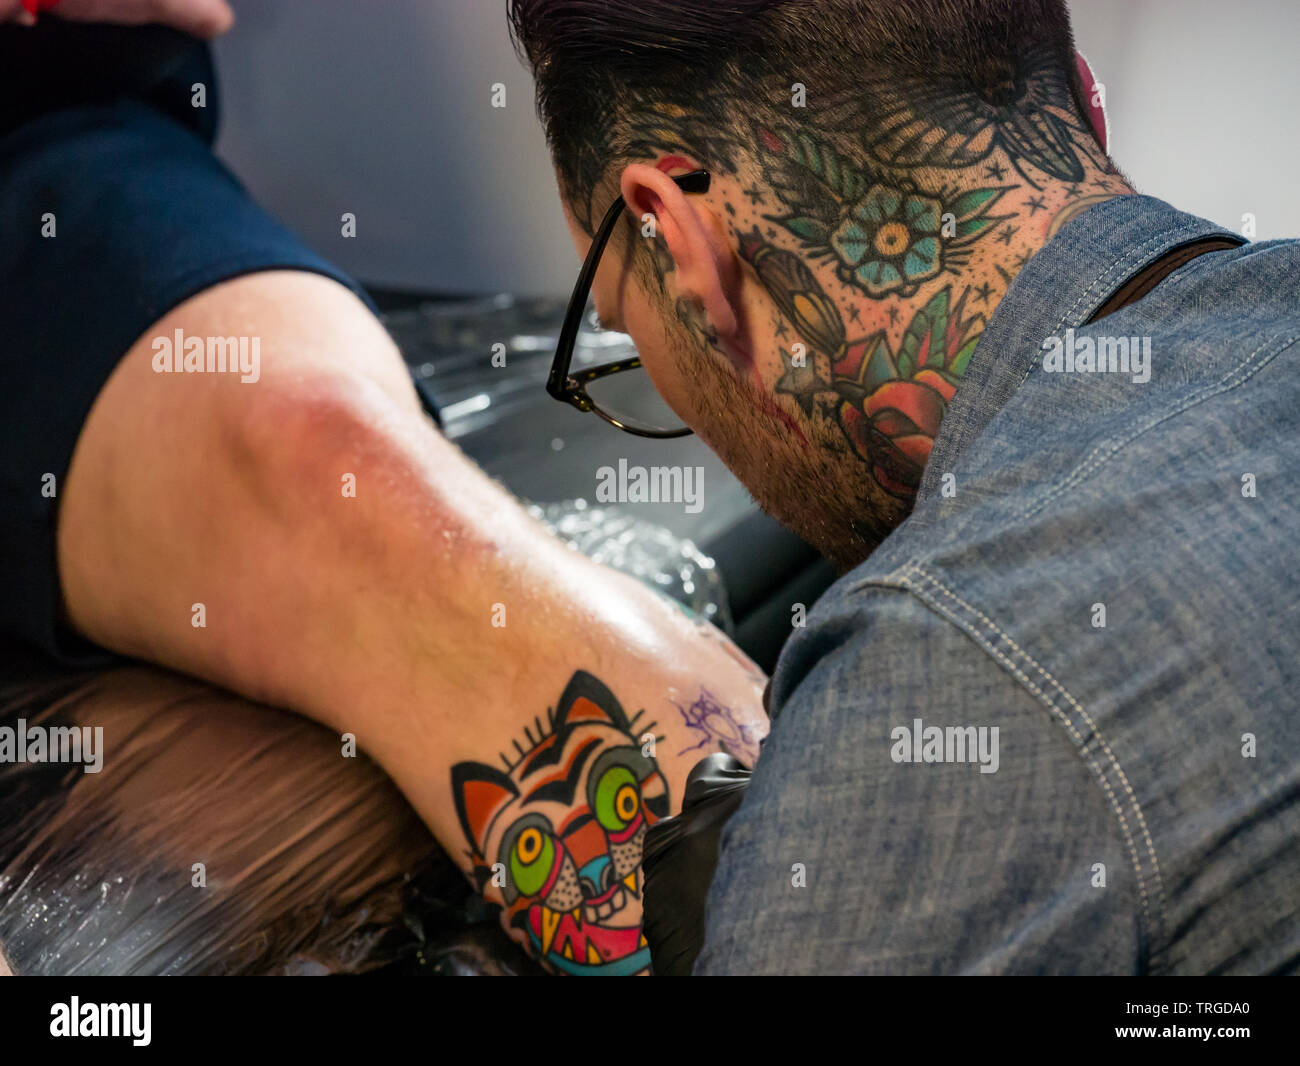 Corn Exchange, Édimbourg, Écosse, Royaume-Uni, 9e Convention de Tatouage écossais : passionnés et artistes tatoueurs avec présence faire un tatouage Banque D'Images